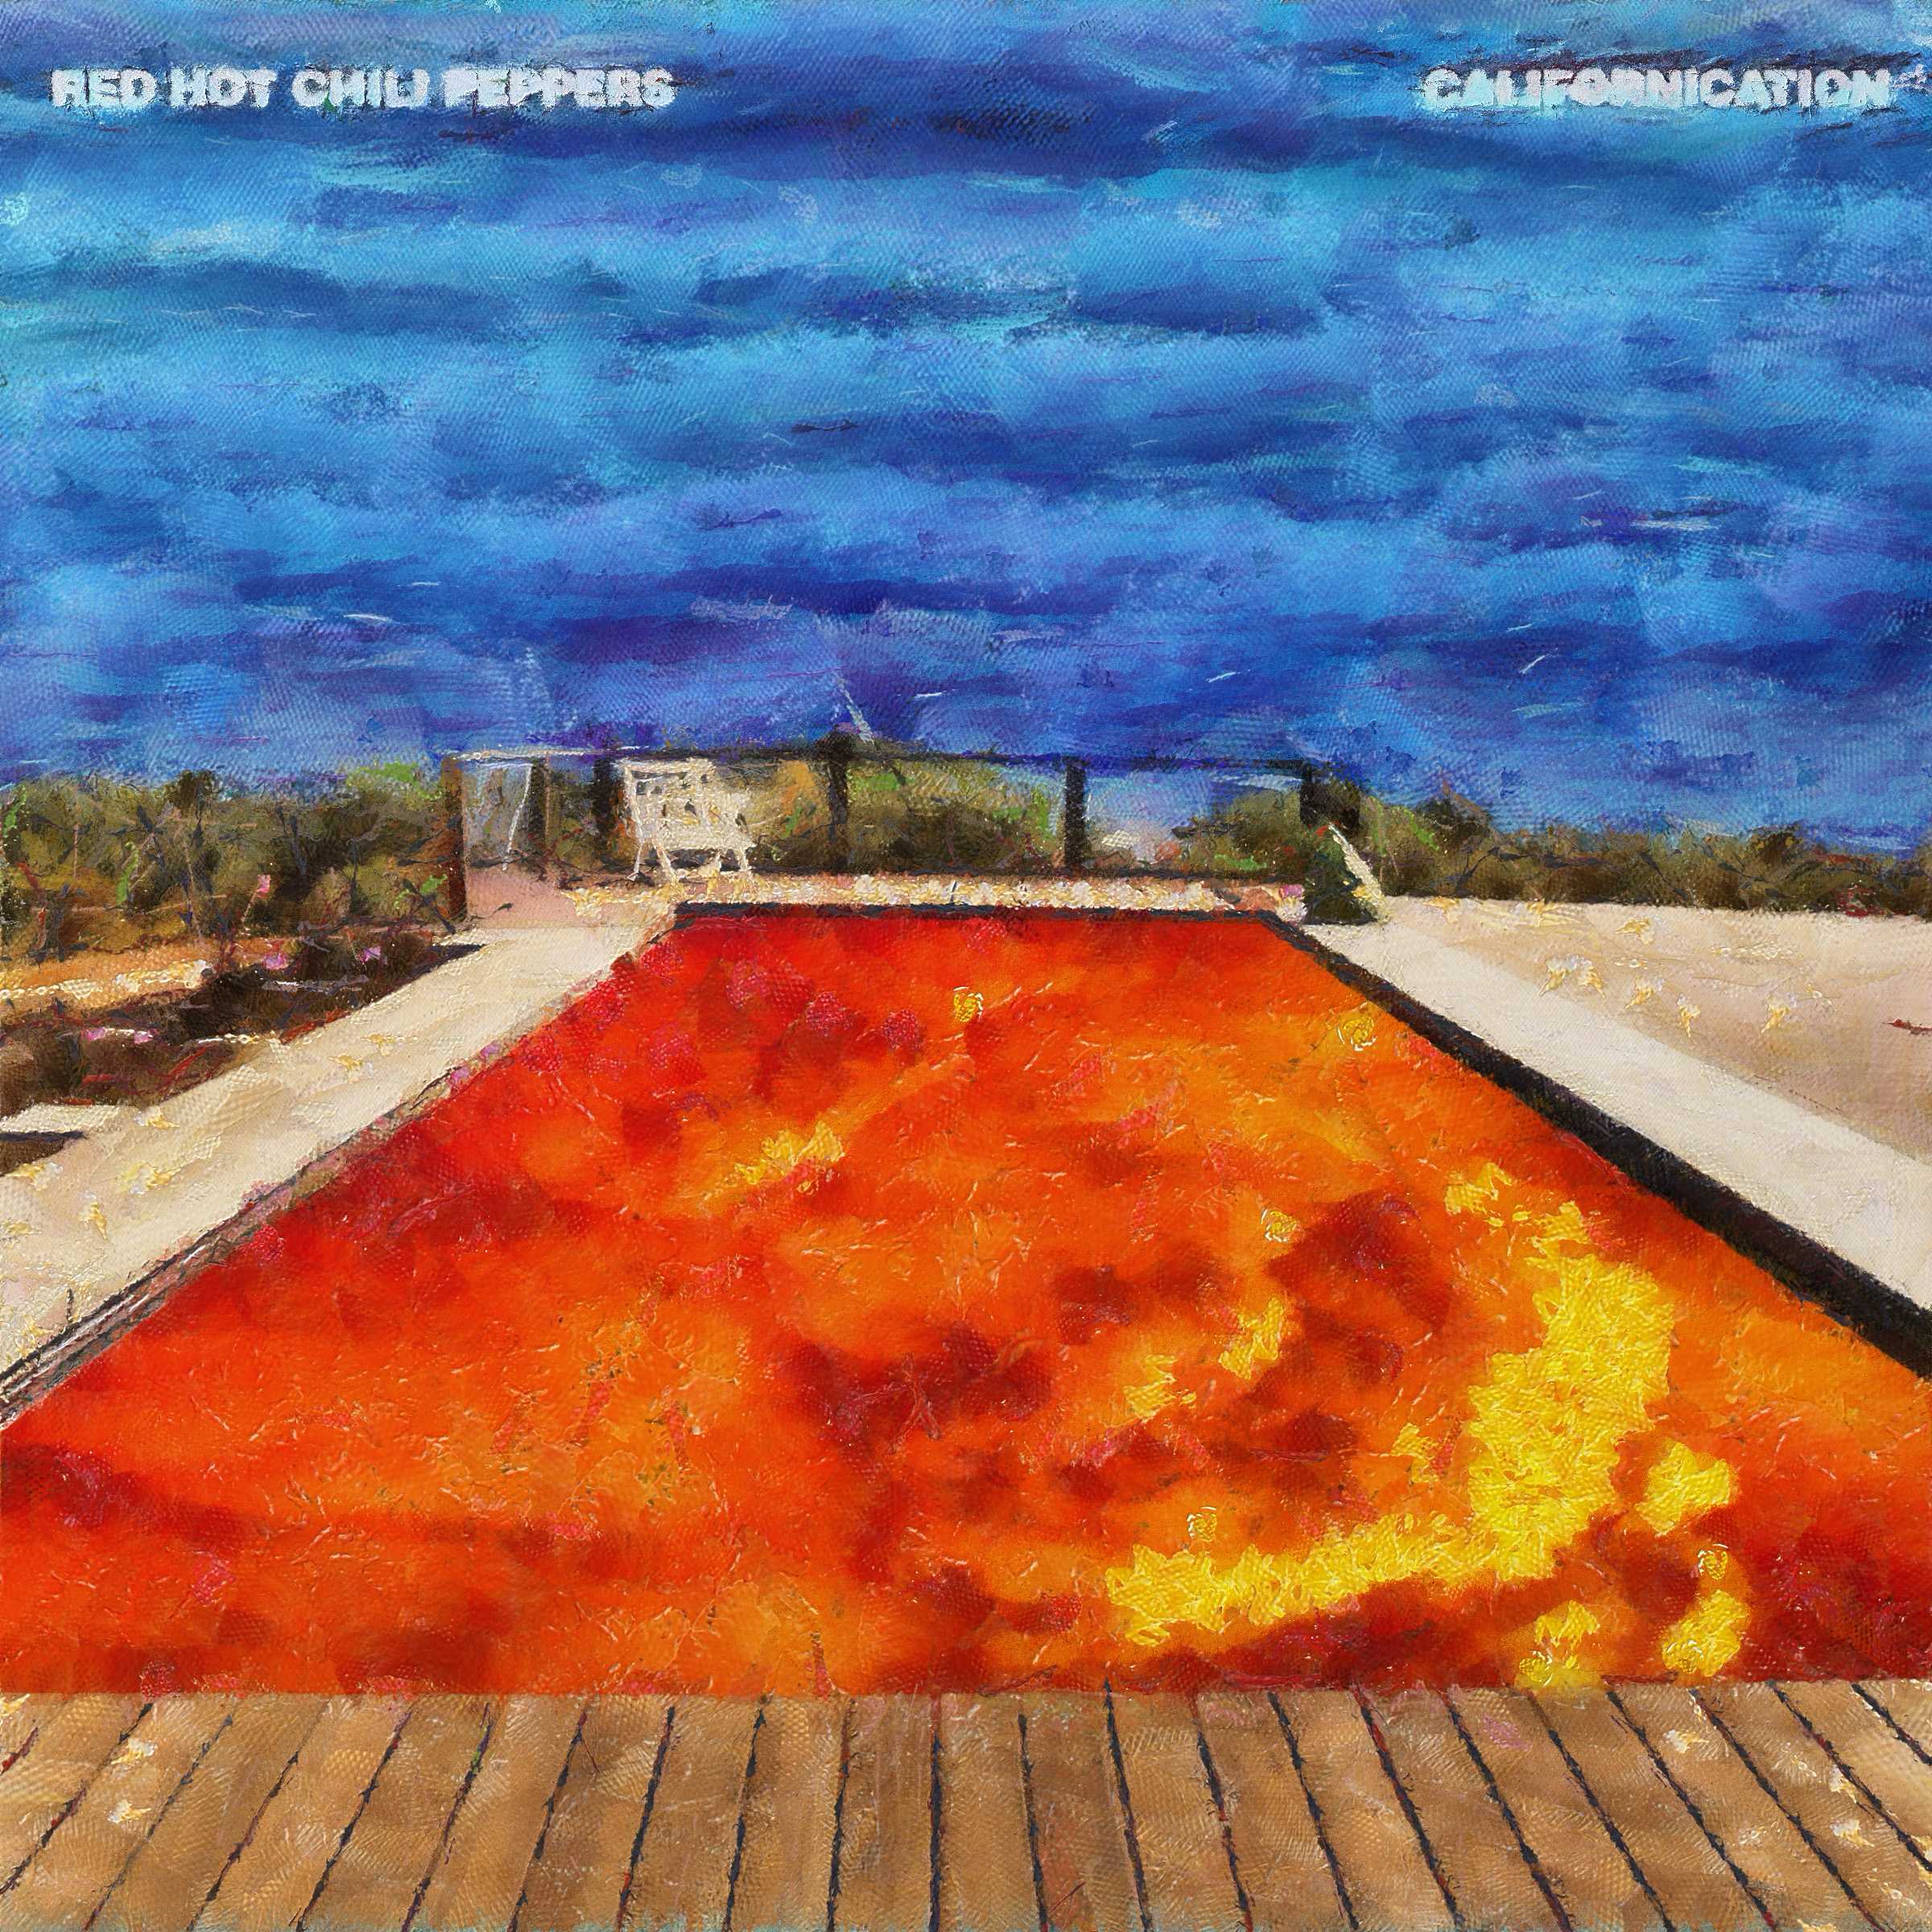 Californication - факты о песне. red hot chili peppers (ред хот чили пепперз), текст песни.